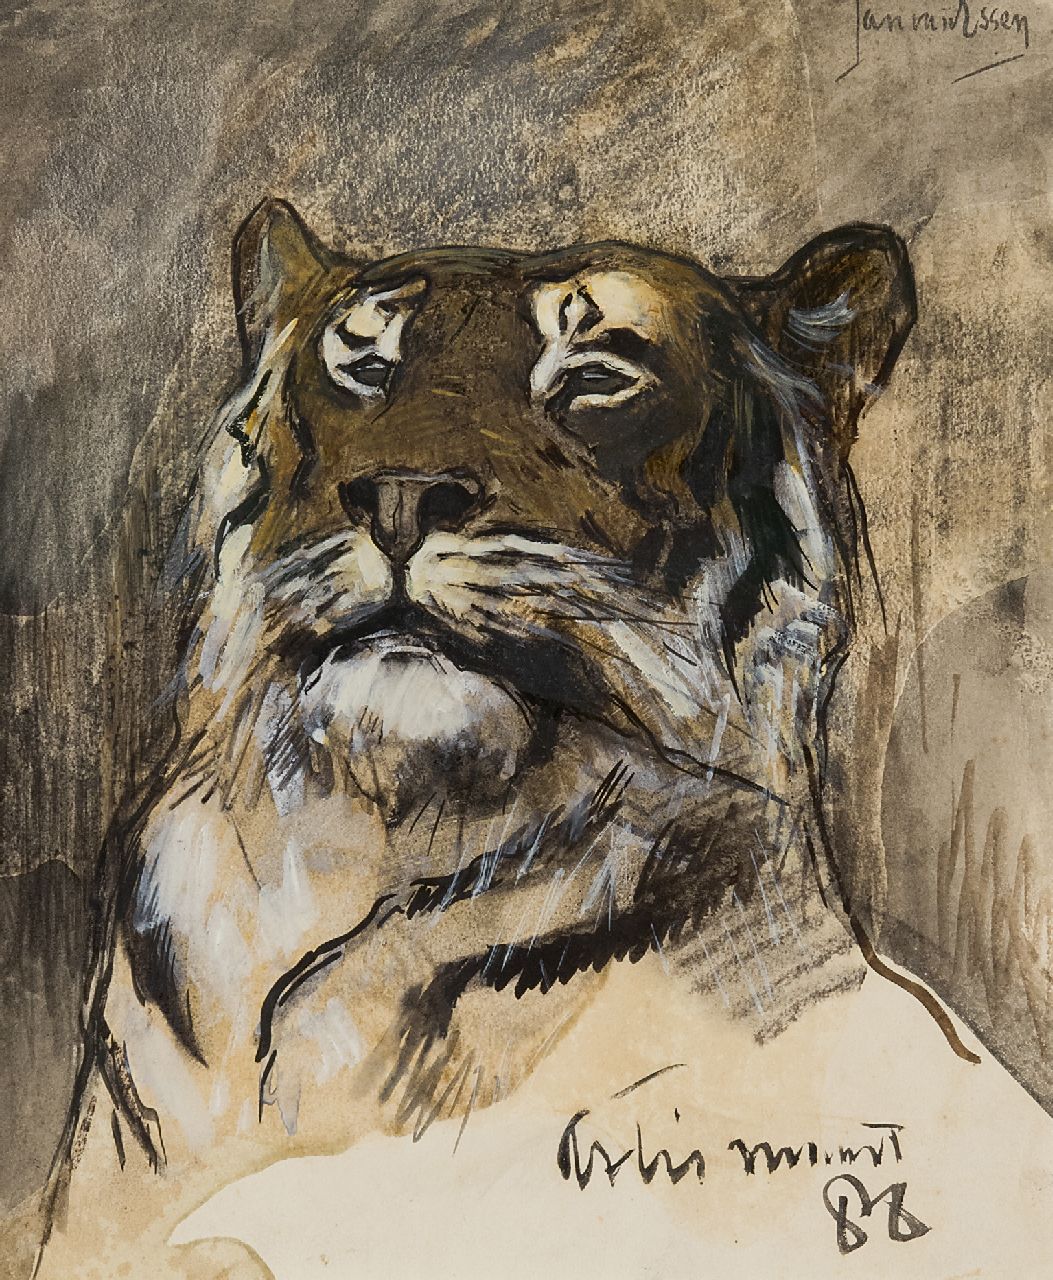 Essen J.C. van | Johannes Cornelis 'Jan' van Essen, Tiger in Artis zoo, Amsterdam, watercolour on paper 25.5 x 20.9 cm, signed u.r. and dated maart '88